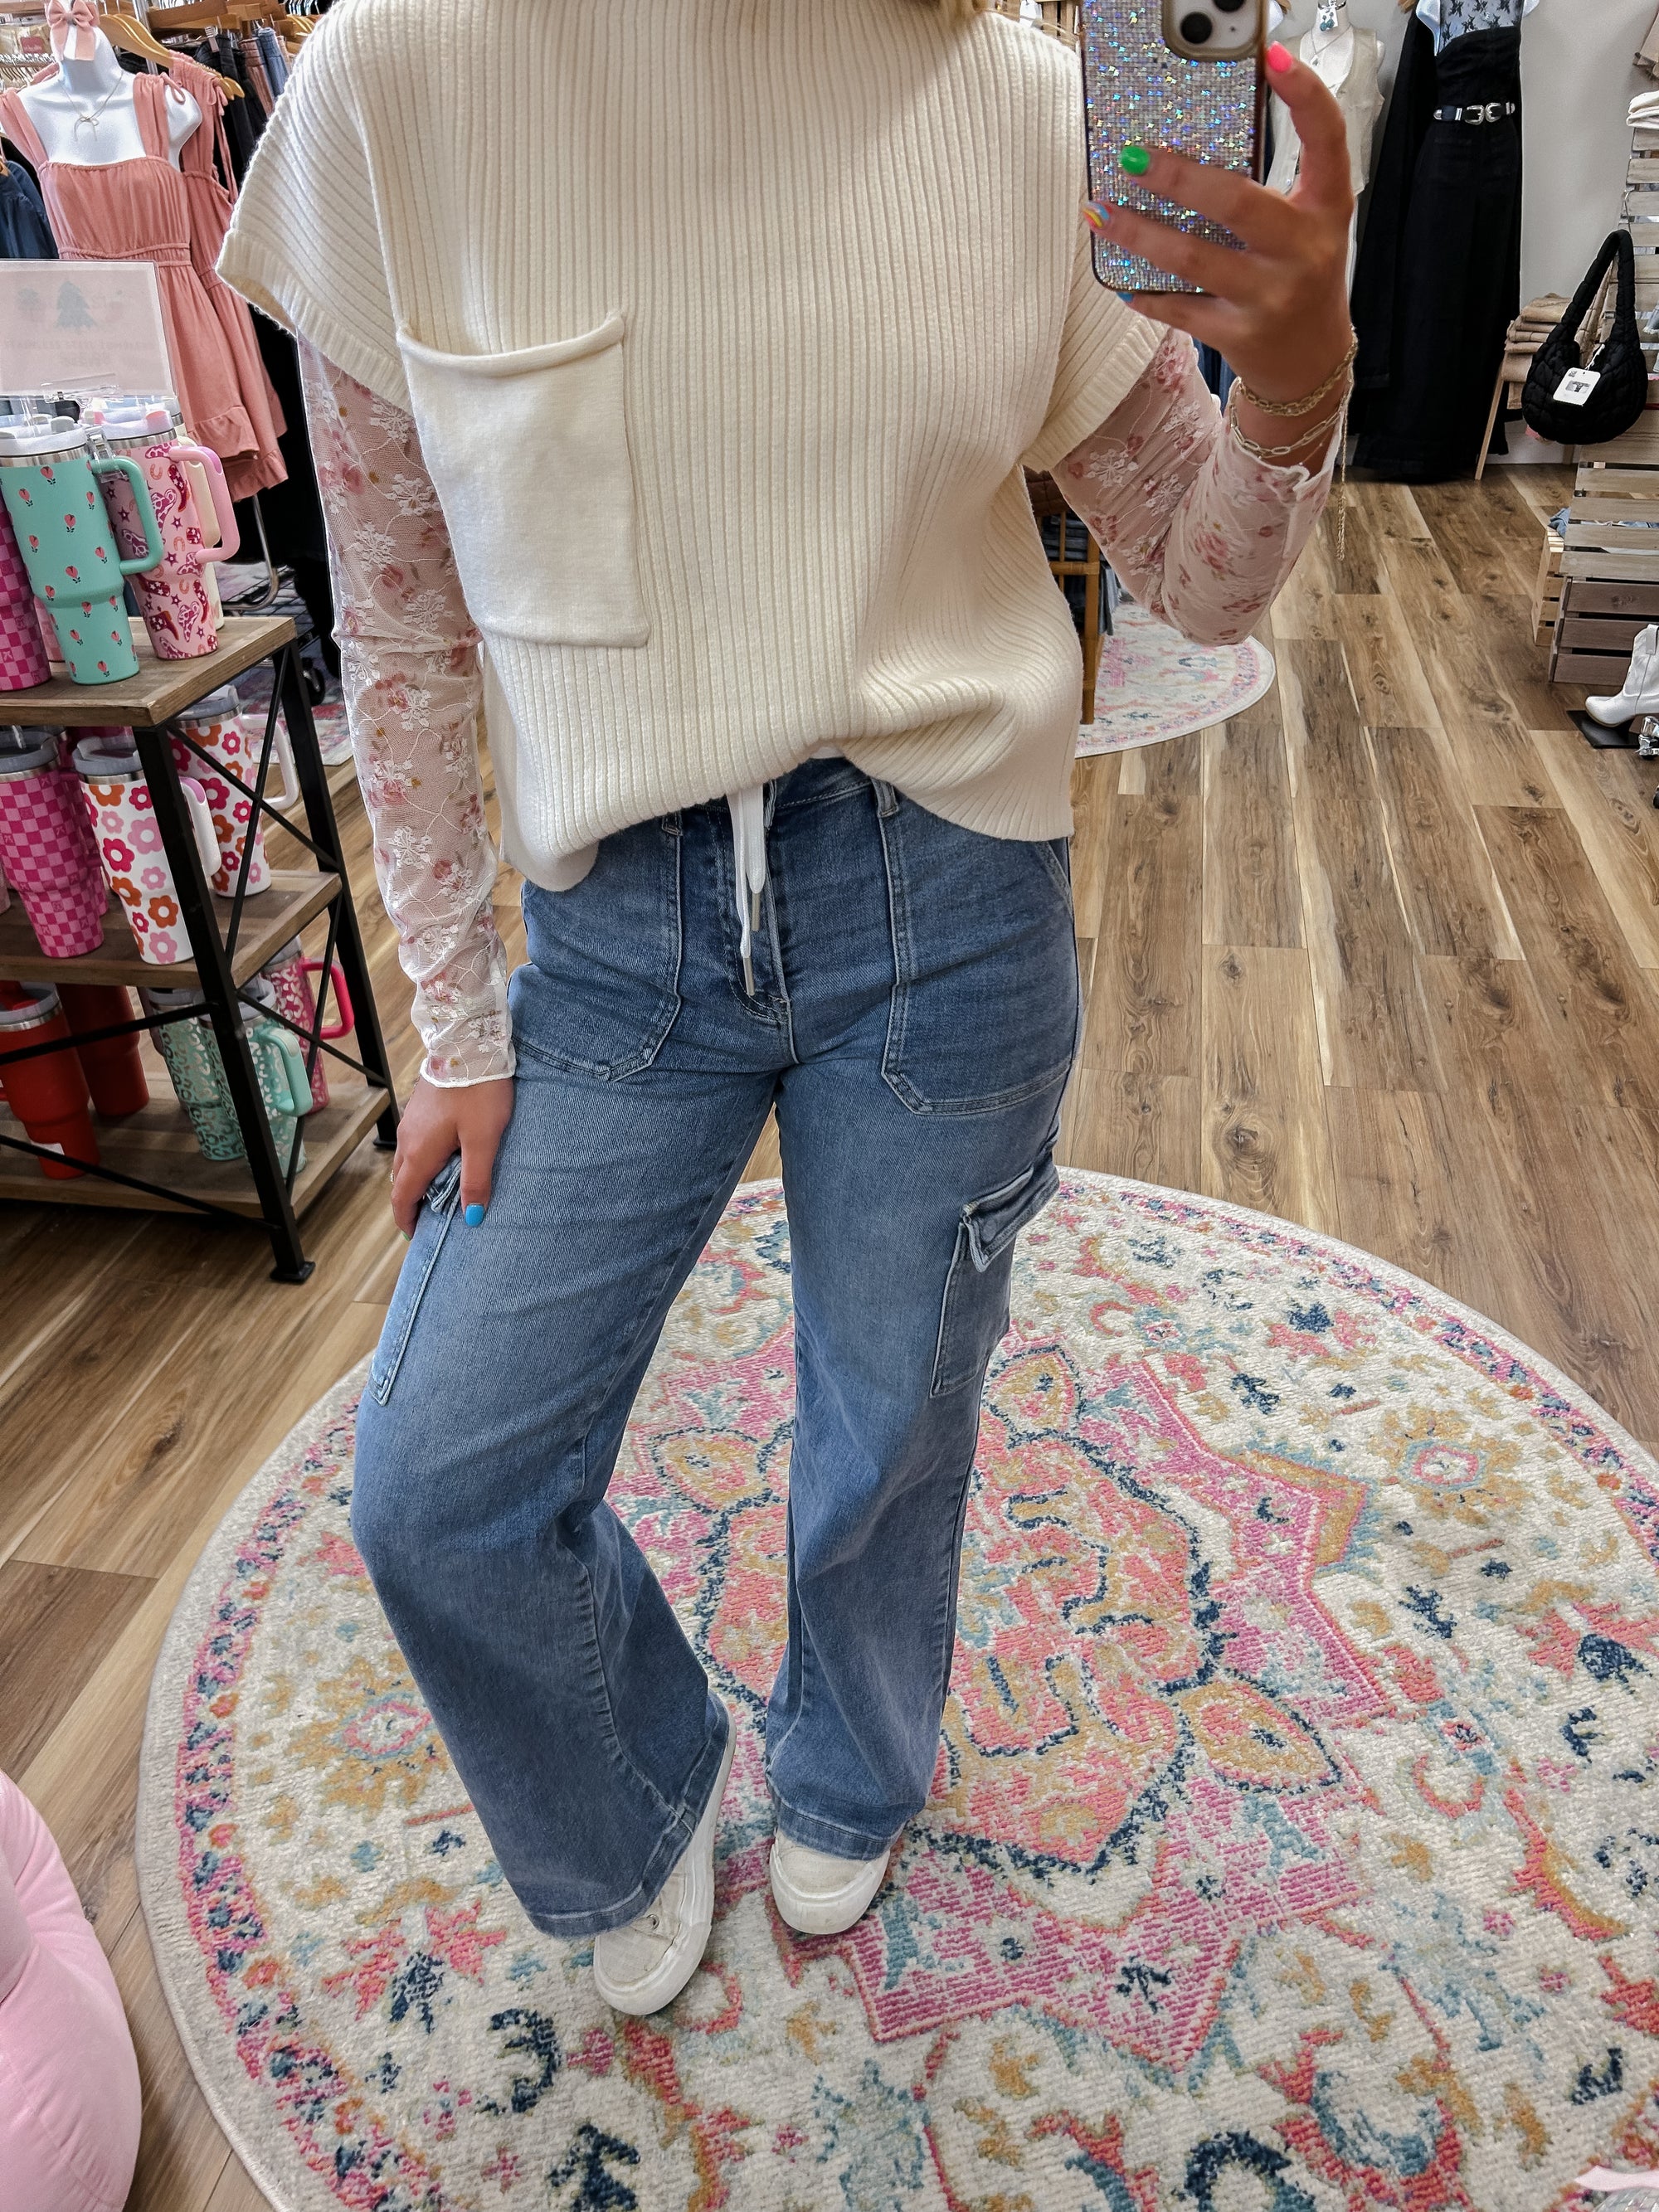 Iris Cream Sweater